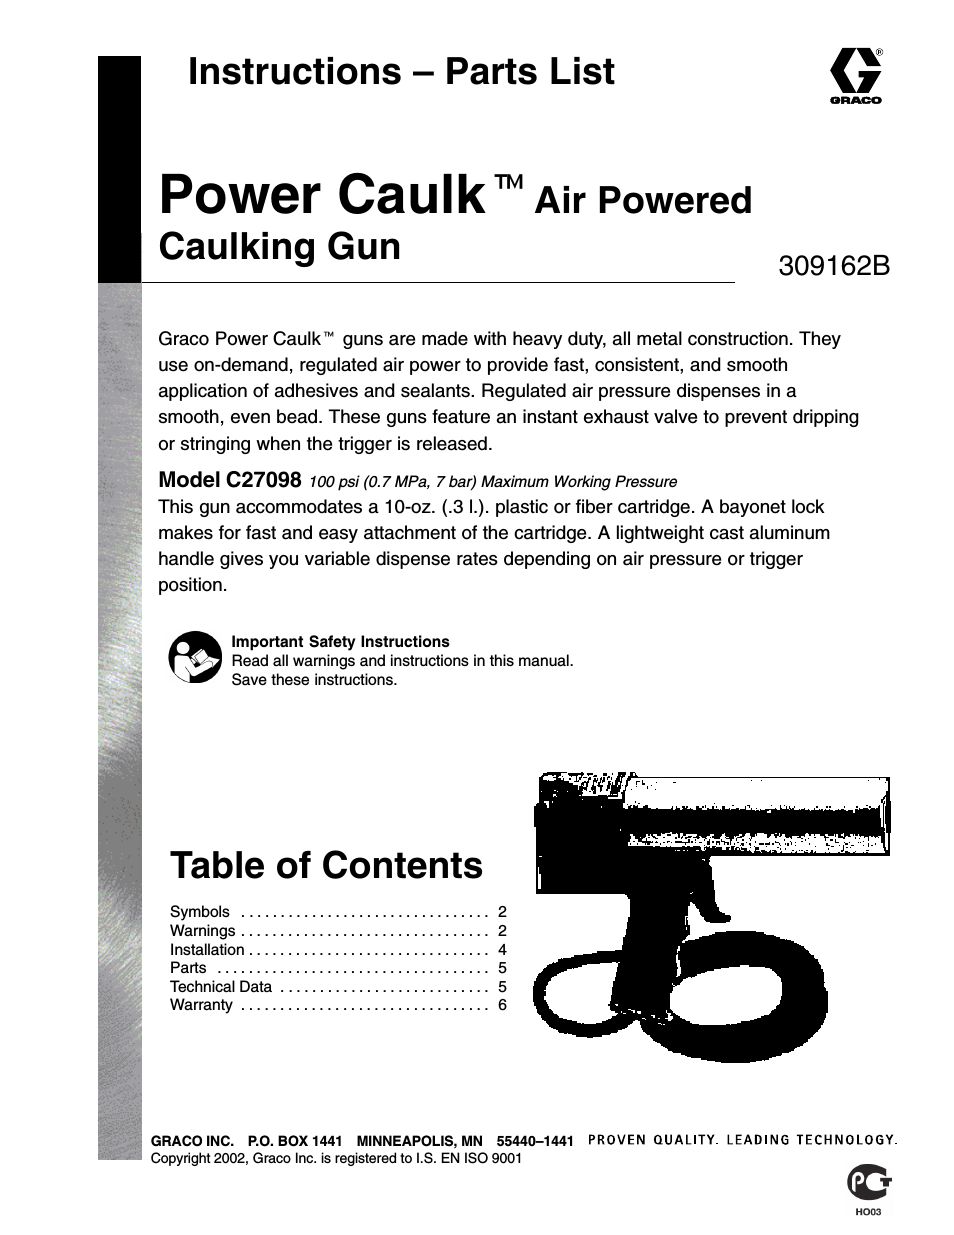 Power Caulk C27098